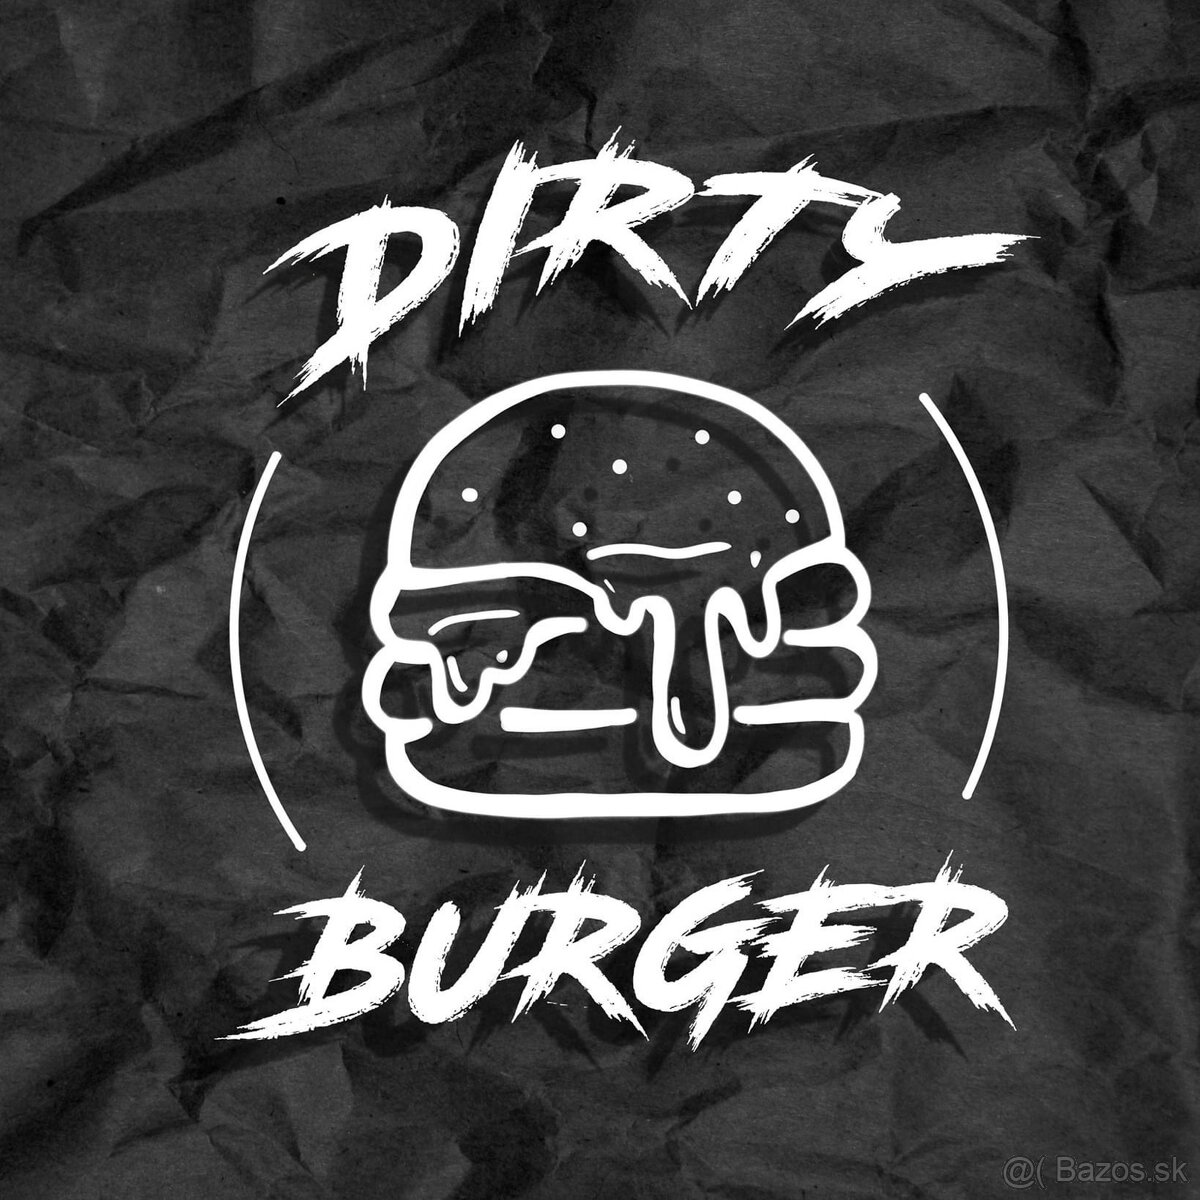 DONÁŠKAR - Dirty Burger